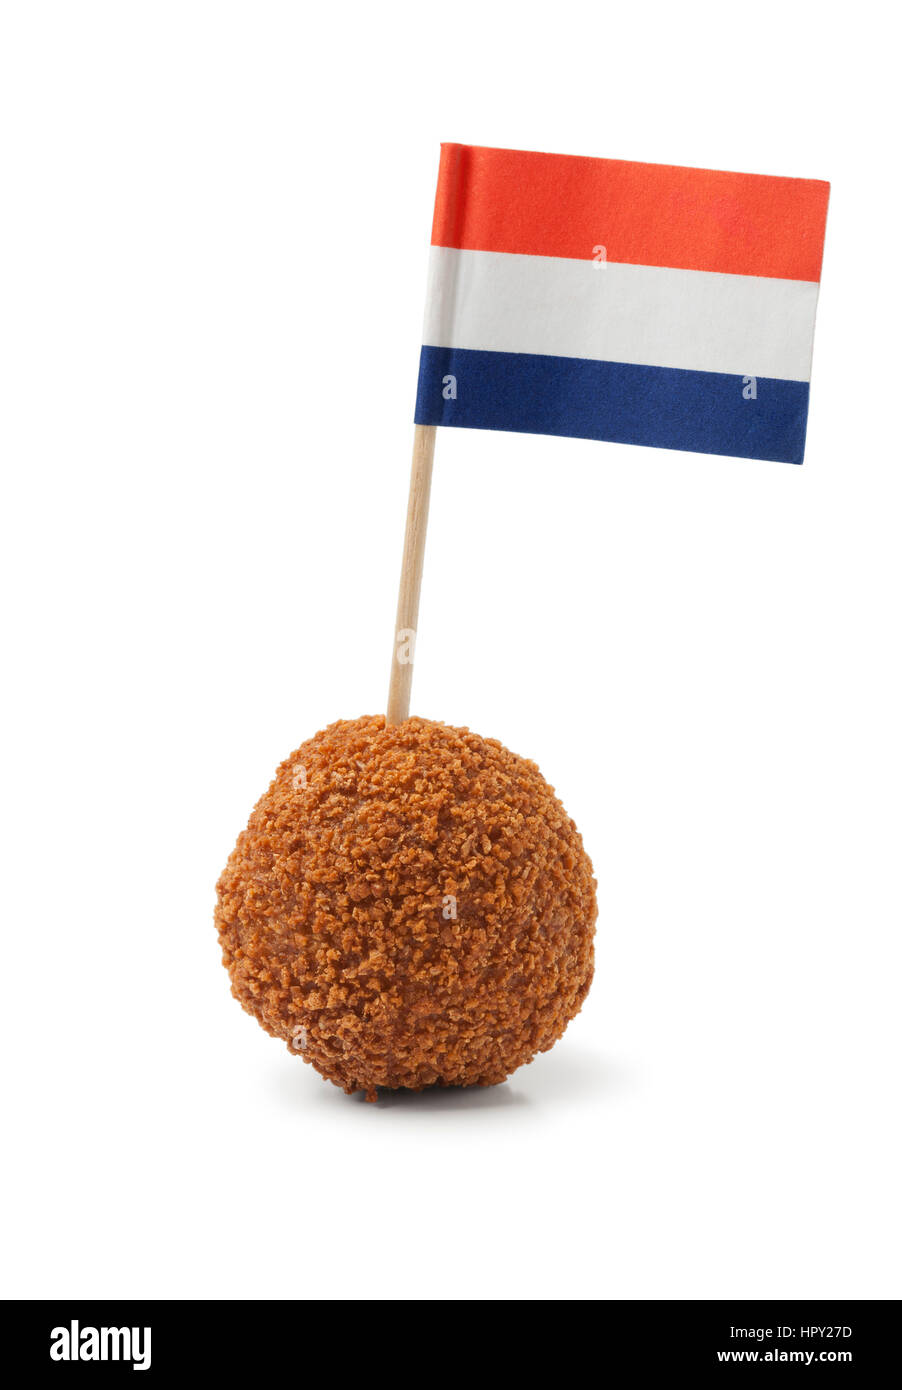 Unico olandese tradizionale snack bitterbal con una bandiera olandese su sfondo bianco Foto Stock